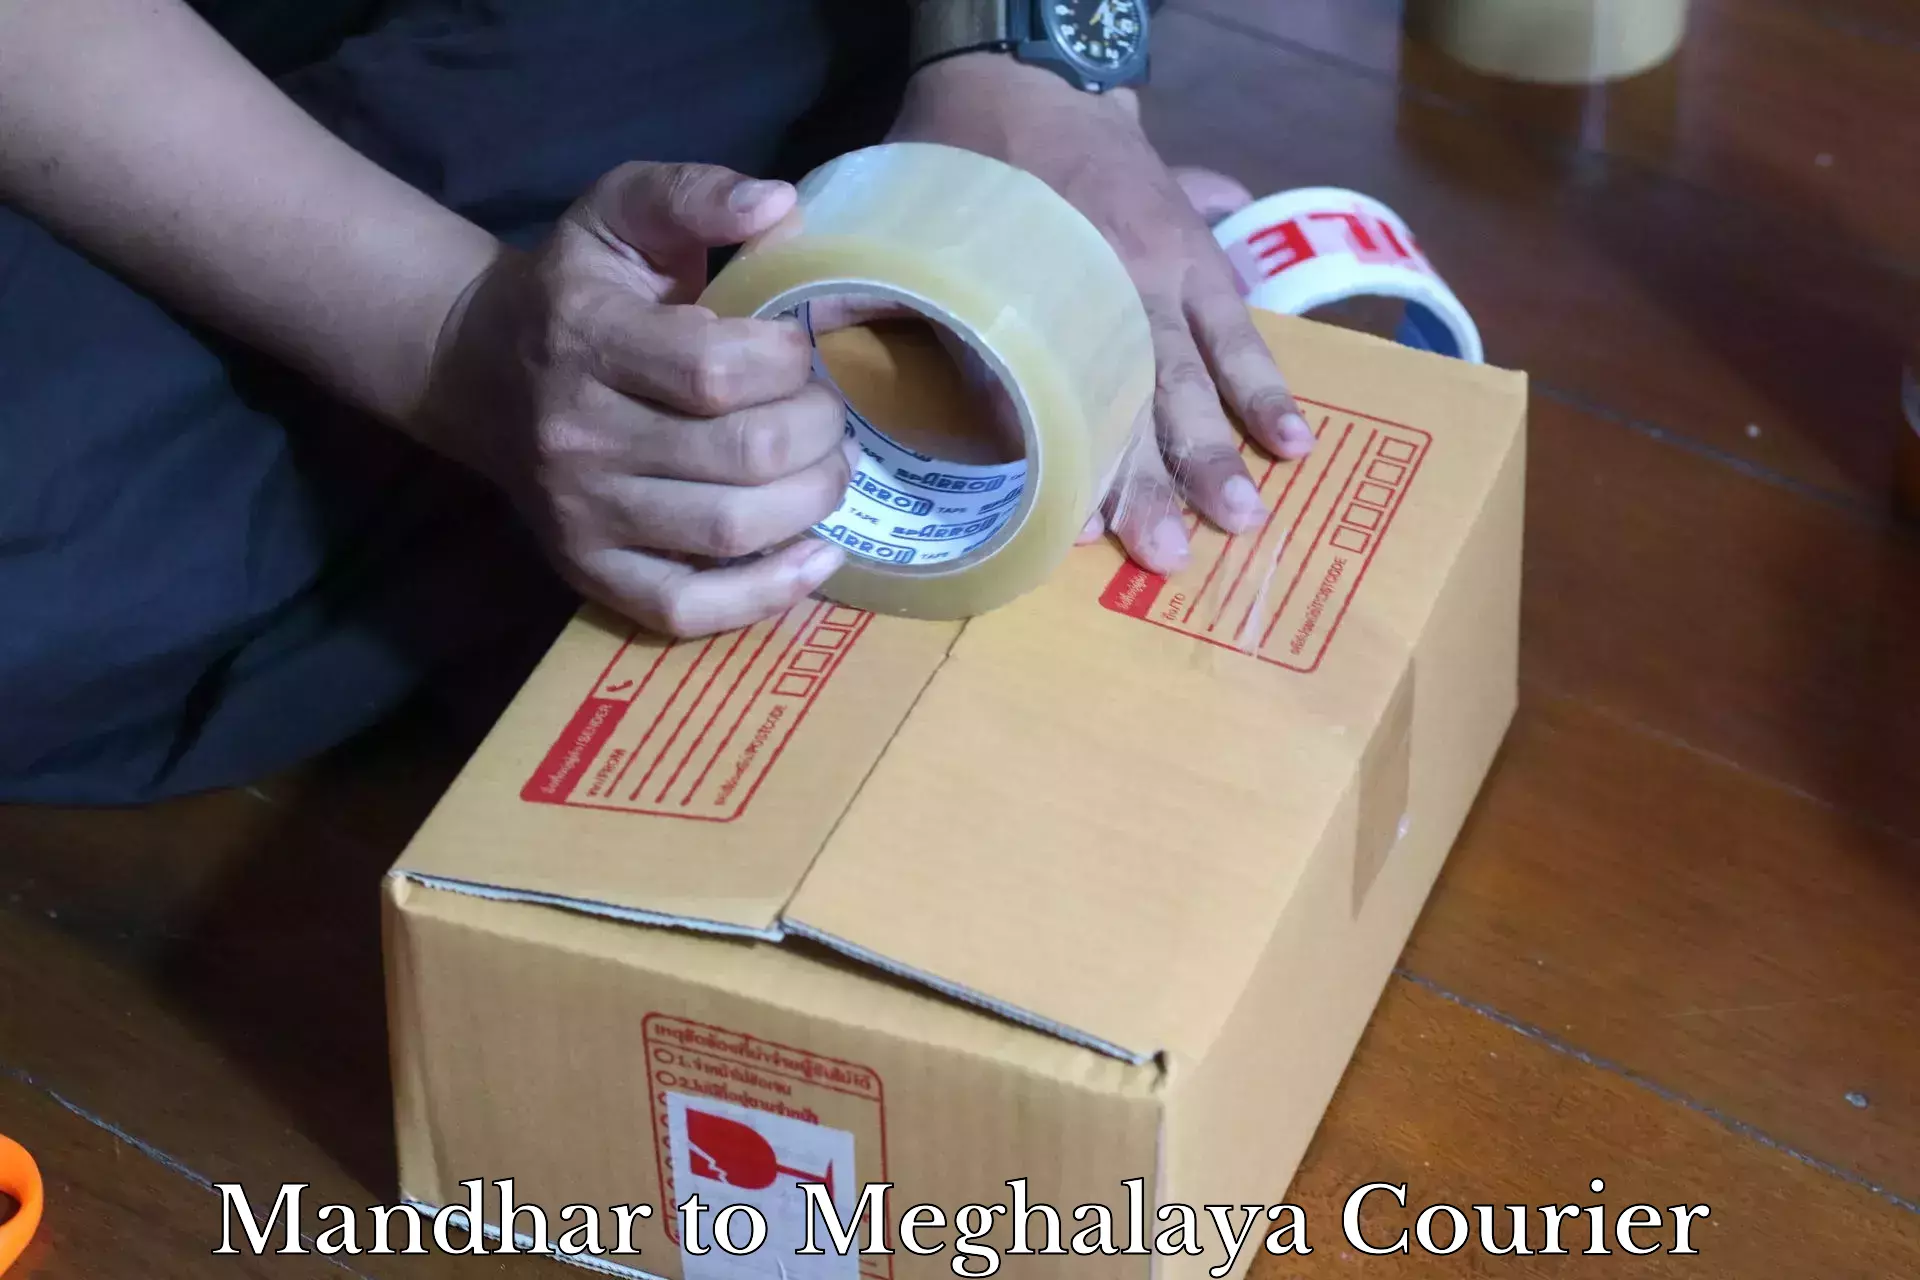 Versatile courier offerings Mandhar to Meghalaya